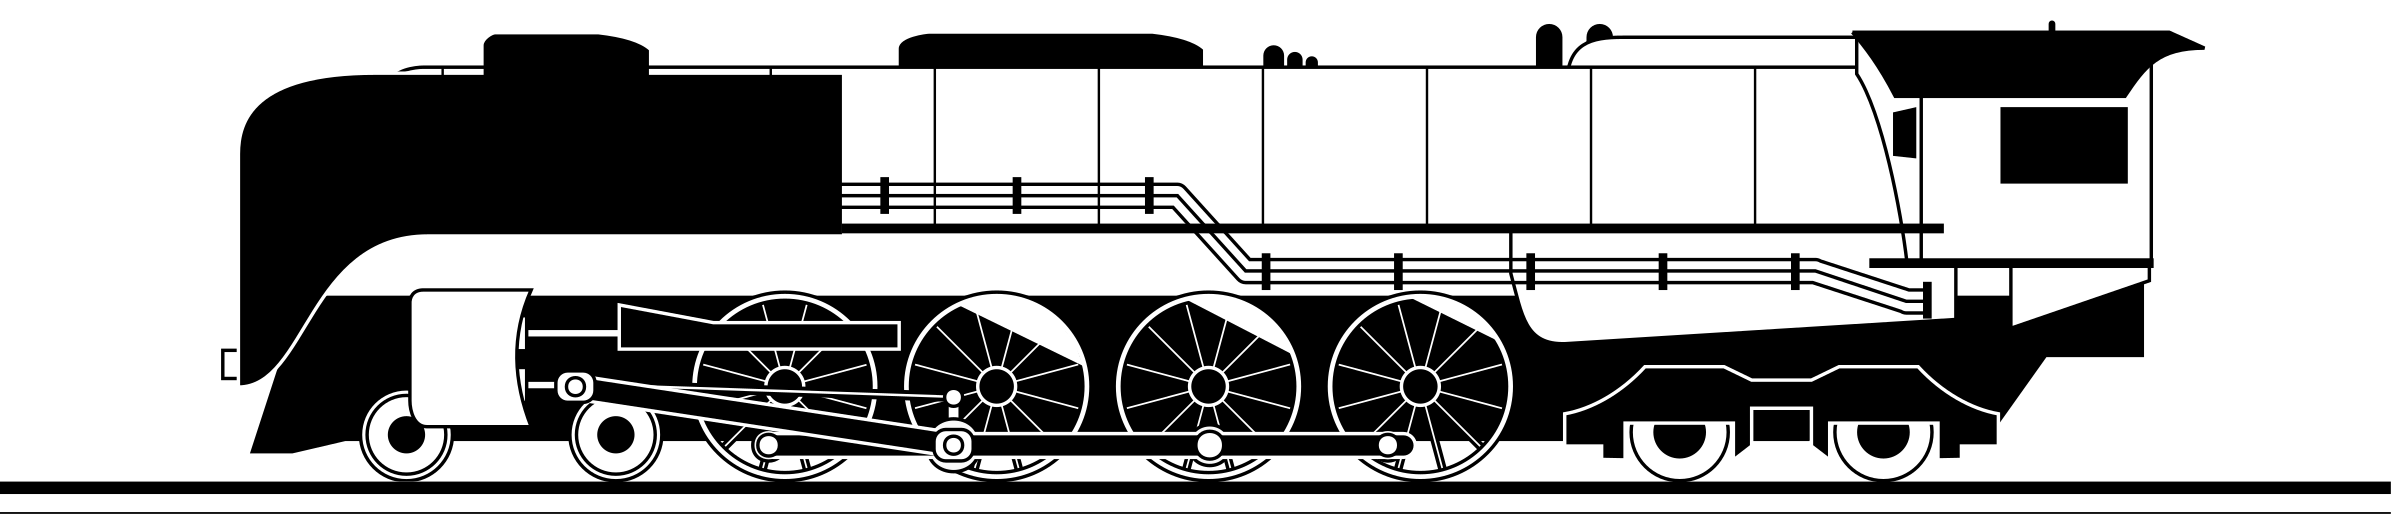 Train steam train